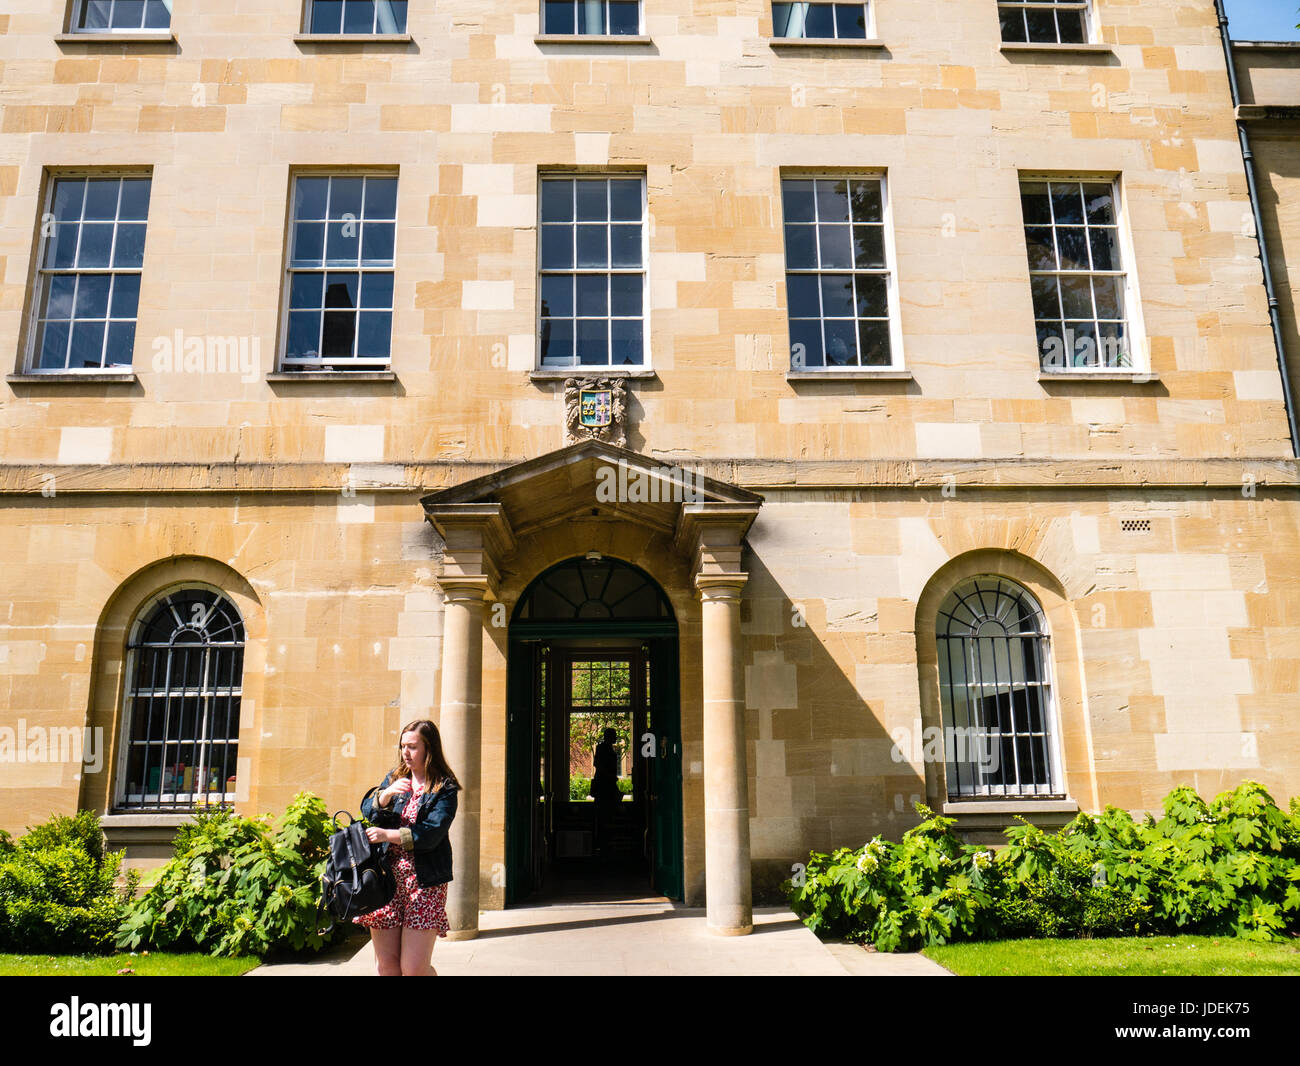 Lintion House, entrée à St Peters College, Oxford, Oxfordshire, Angleterre, Royaume-Uni,GO. Banque D'Images